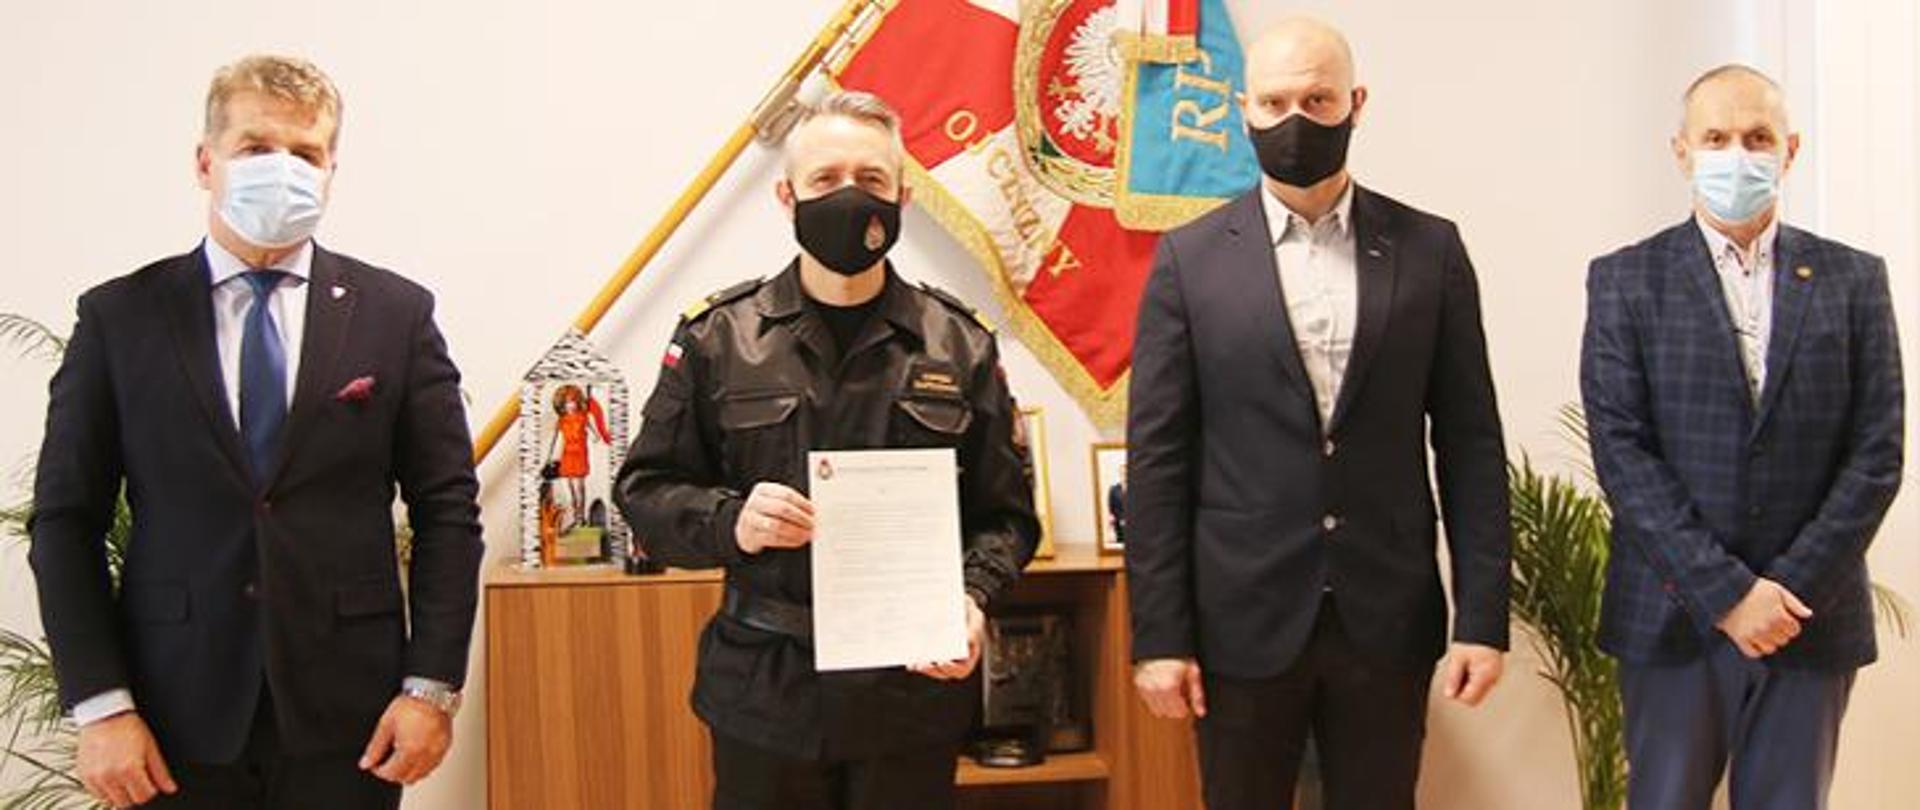 Komendant Główny Państwowej Straży Pożarnej nadbryg. Andrzej Bartkowiak, wraz z przedstawicielami Związków Zawodowych działających w PSP, apelują o oddawanie osocza przez strażaków którzy przeszli chorobę COVID-19